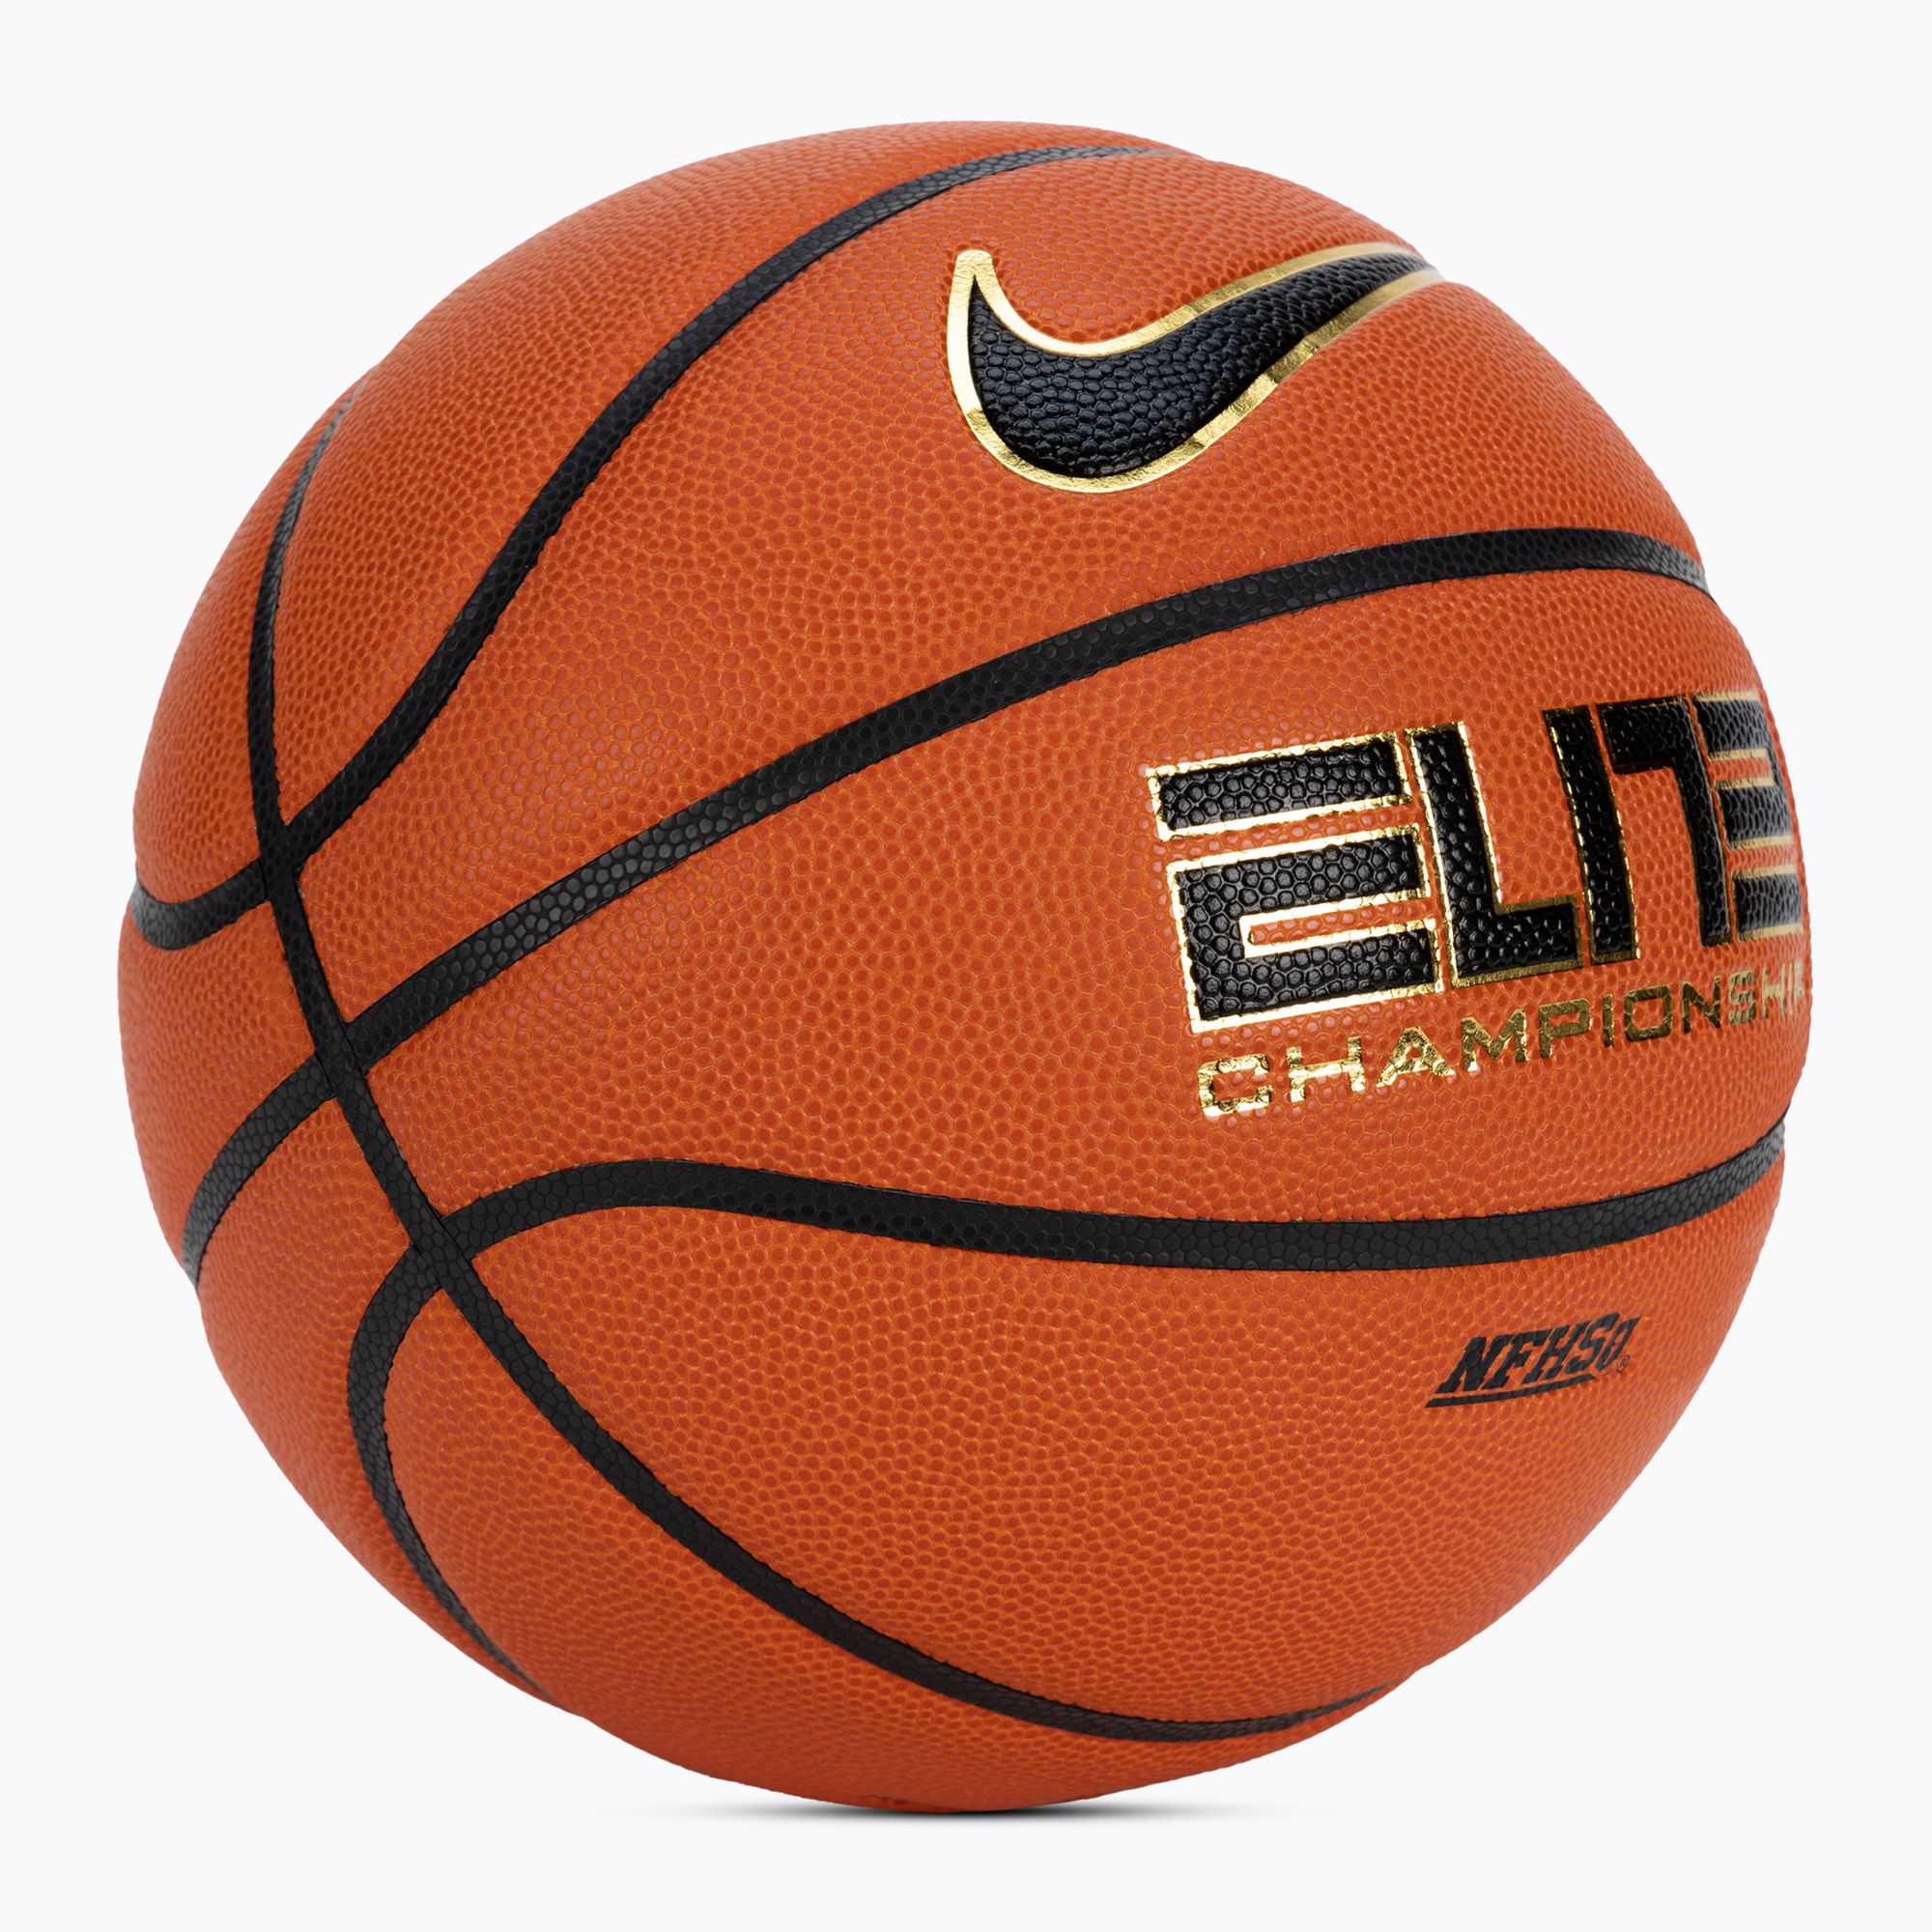 Piłka do koszykówki Nike Elite Championship 8P 2.0 Deflated amber/black/metallic gold rozmiar 6 zdjęcie nr 2